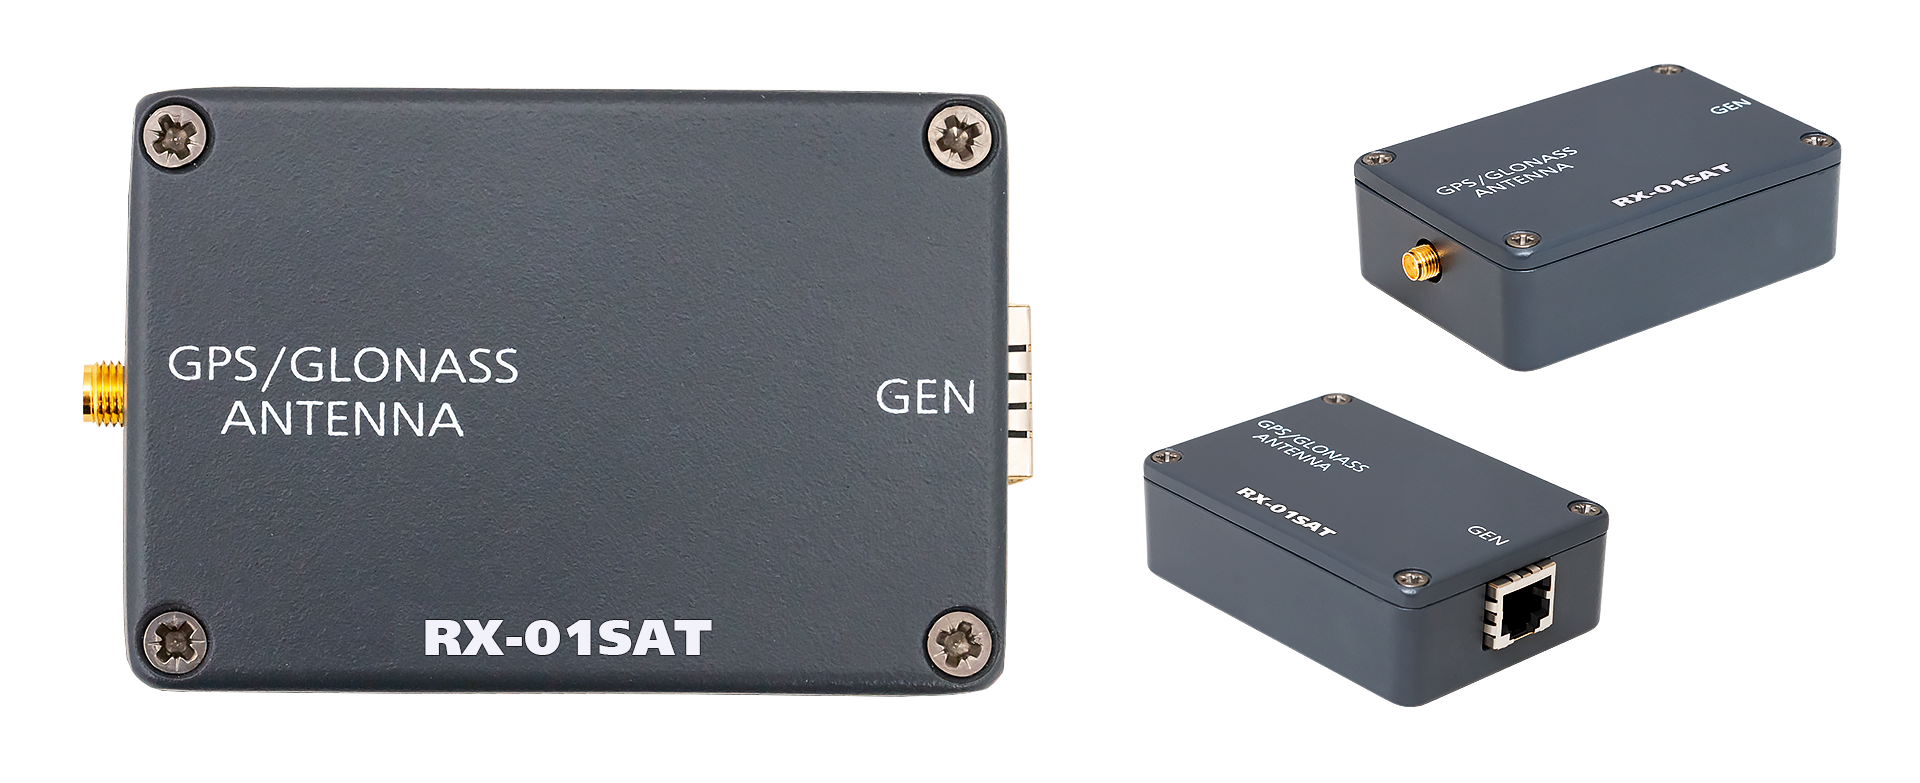 RX-01SAT GPS антенна и приёмник для генератора синхросигналов Les